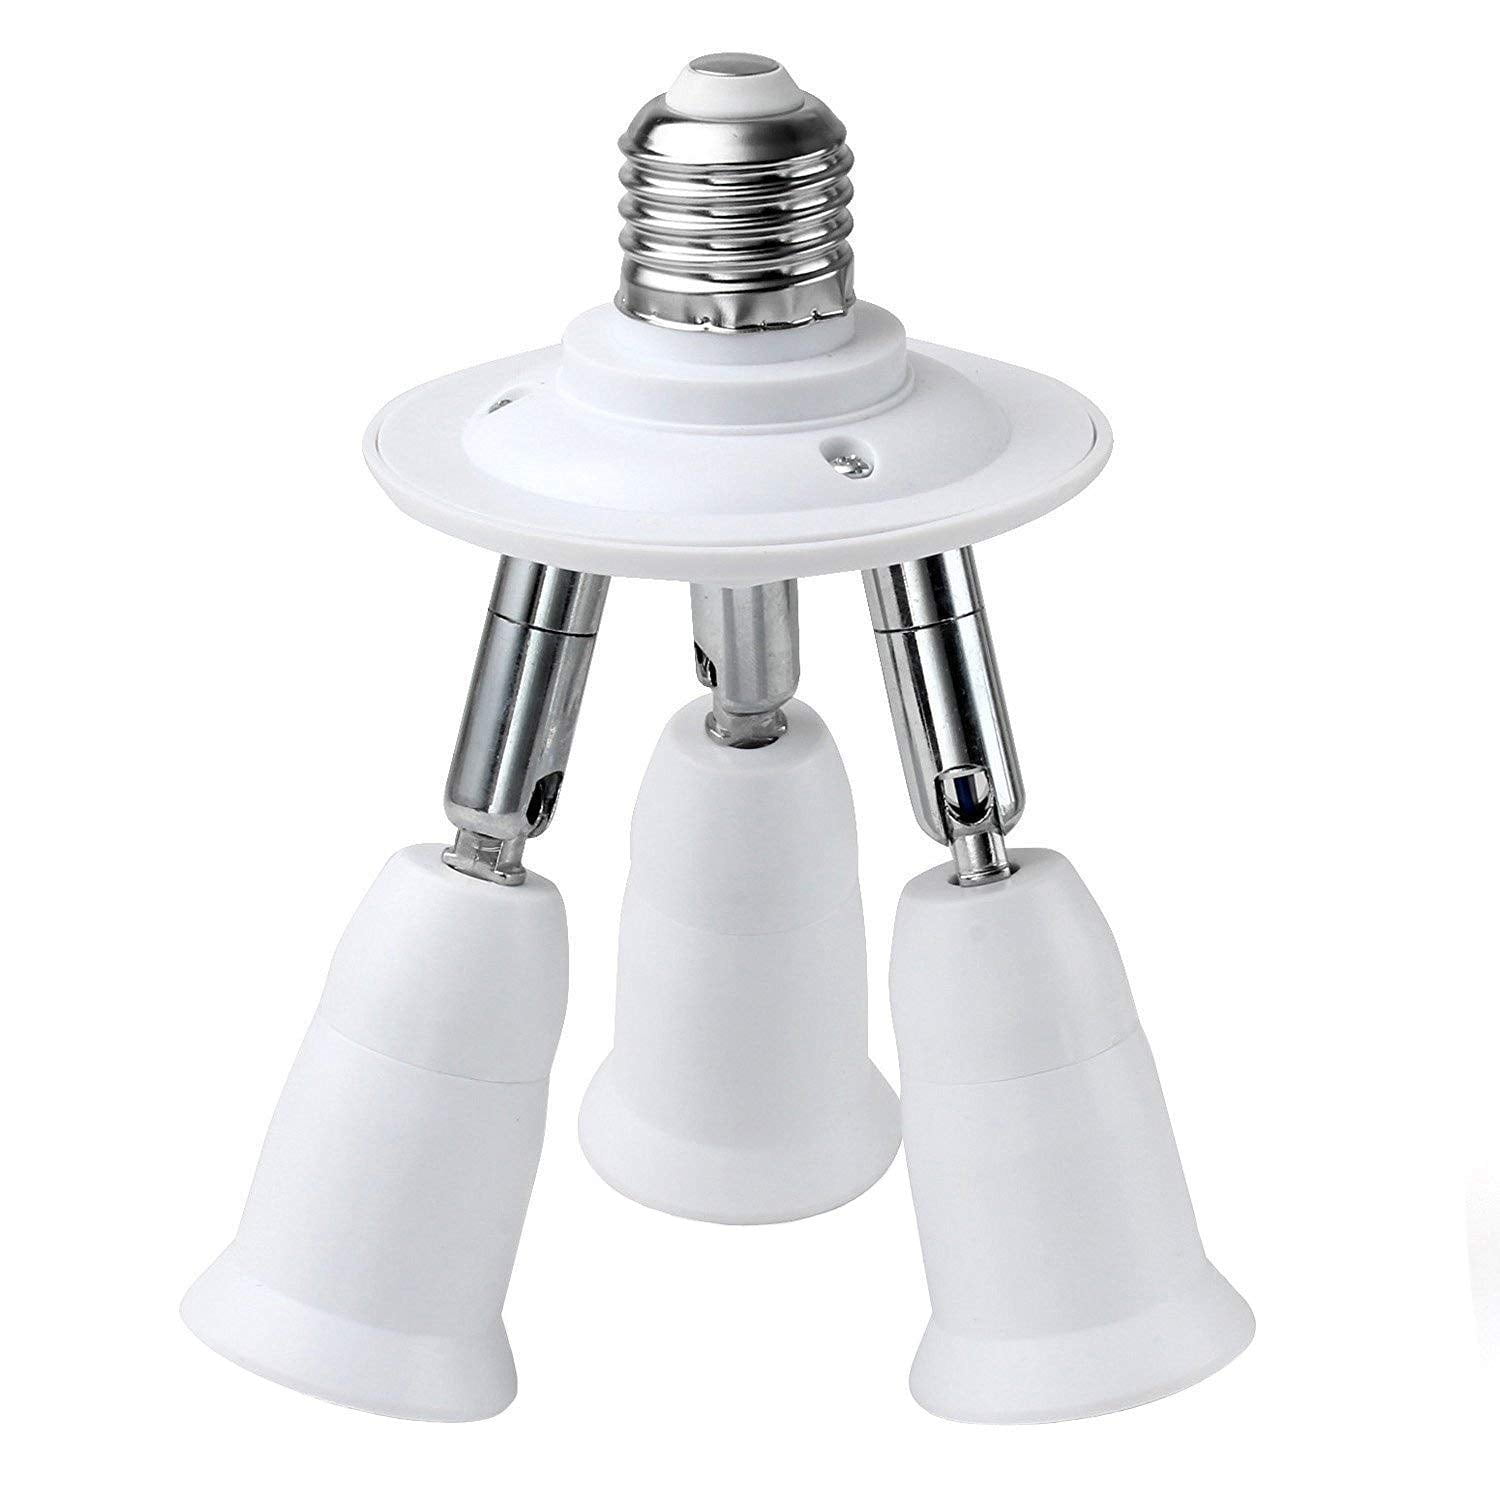 5 in 1 Light Socket Splitter expander E26 E27 Adapter Converter Bulbs adjustable